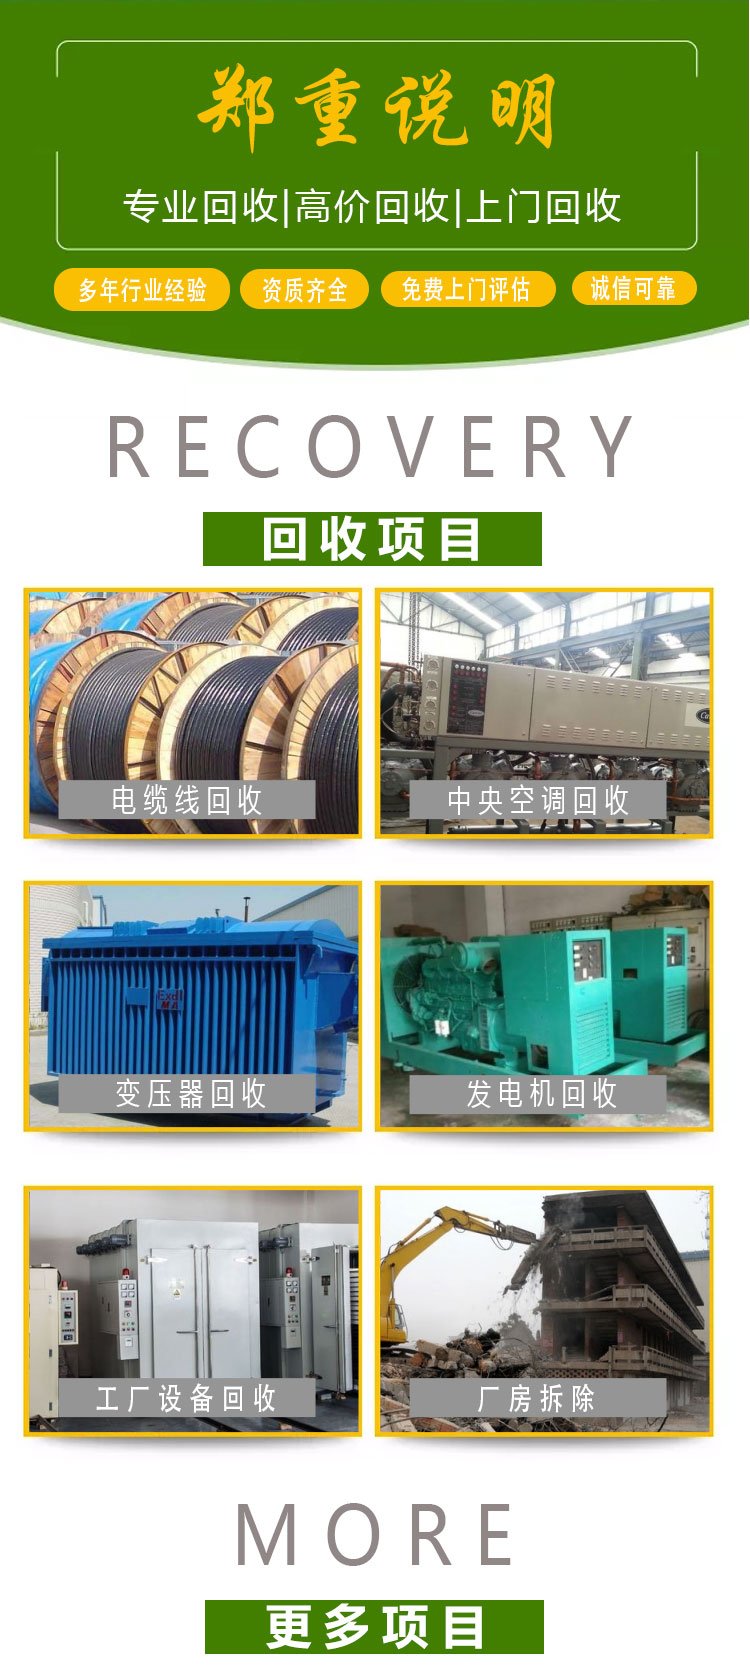 广州从化机器设备拆除回收变电站收购公司负责报价